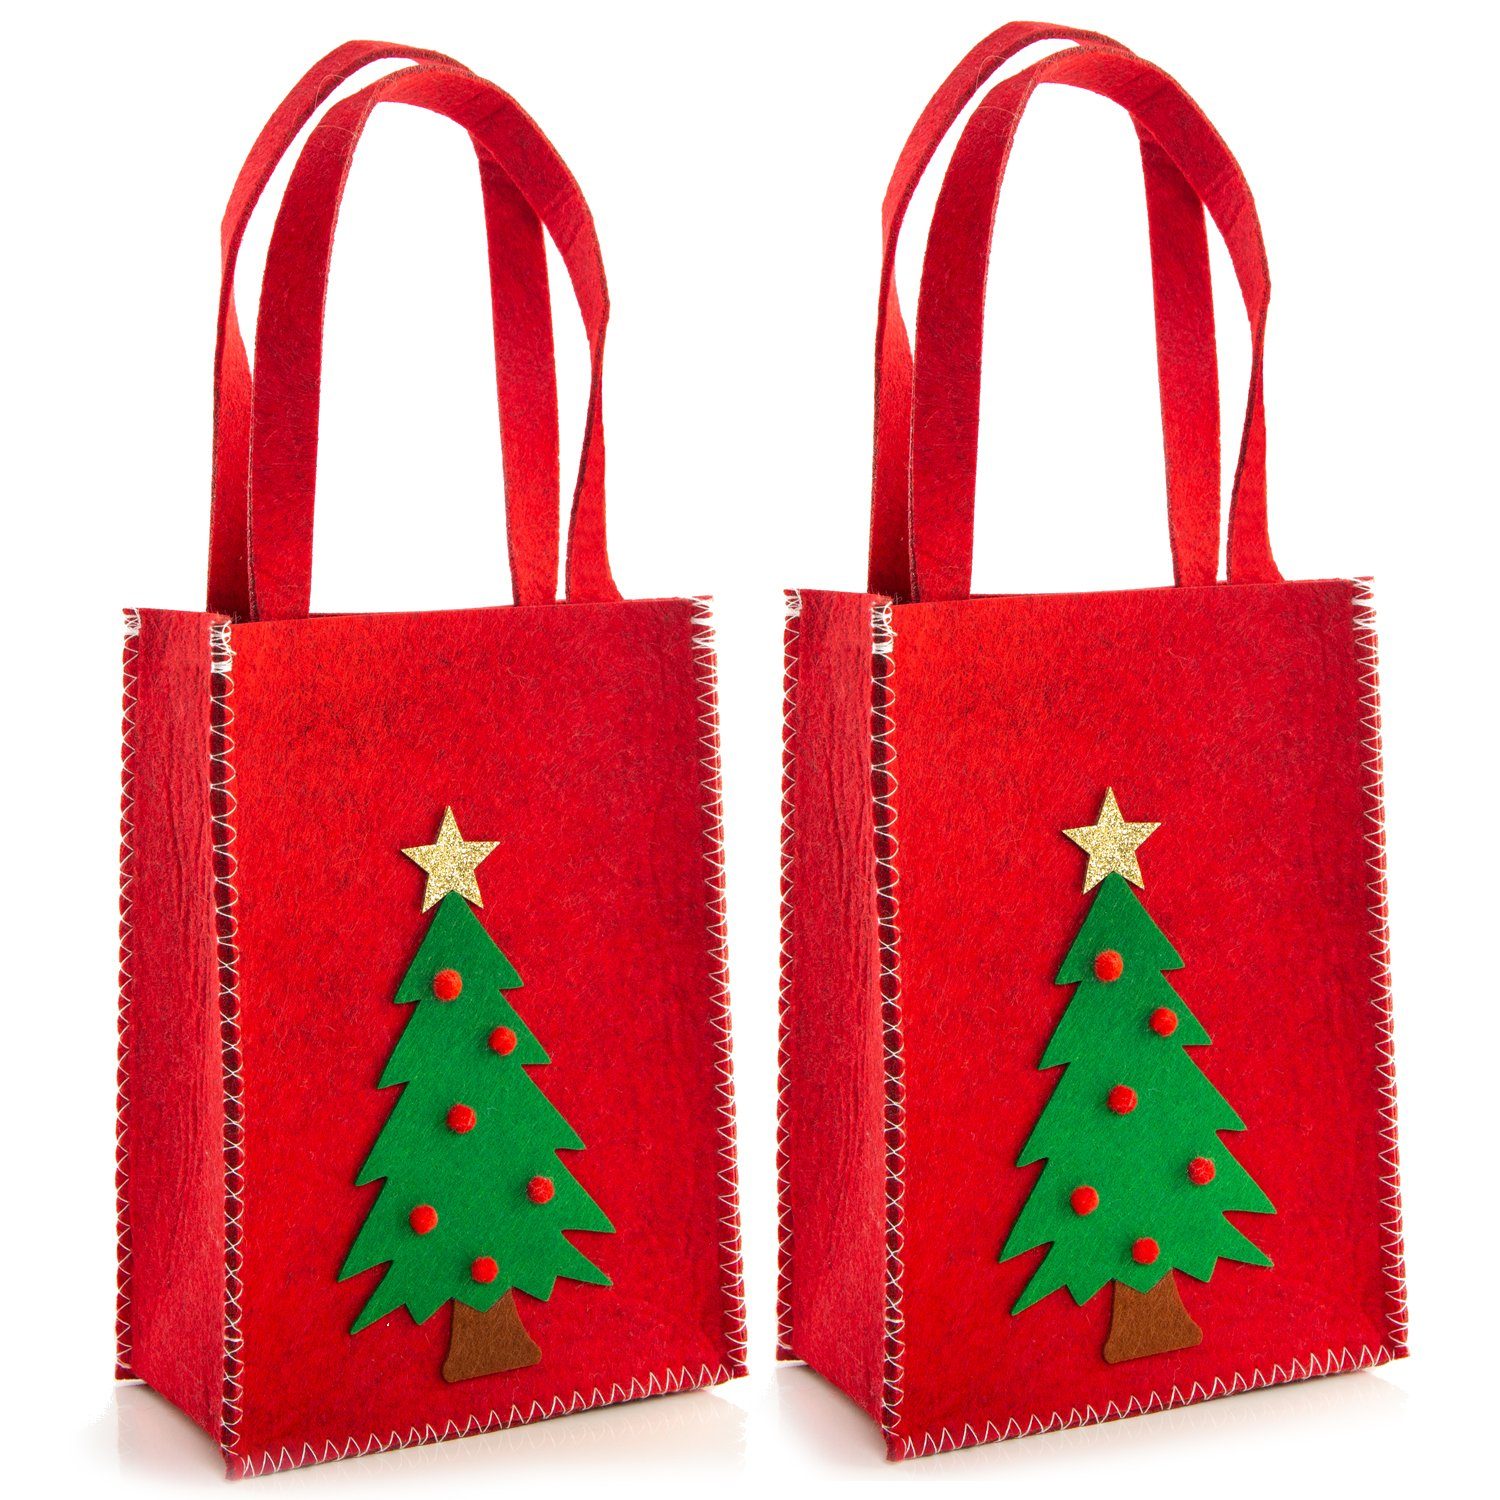 Logbuch-Verlag Geschenkbox 2 rote Weihnachtstaschen mit Henkel auz Filz (2 St), Weihnachten Filztaschen